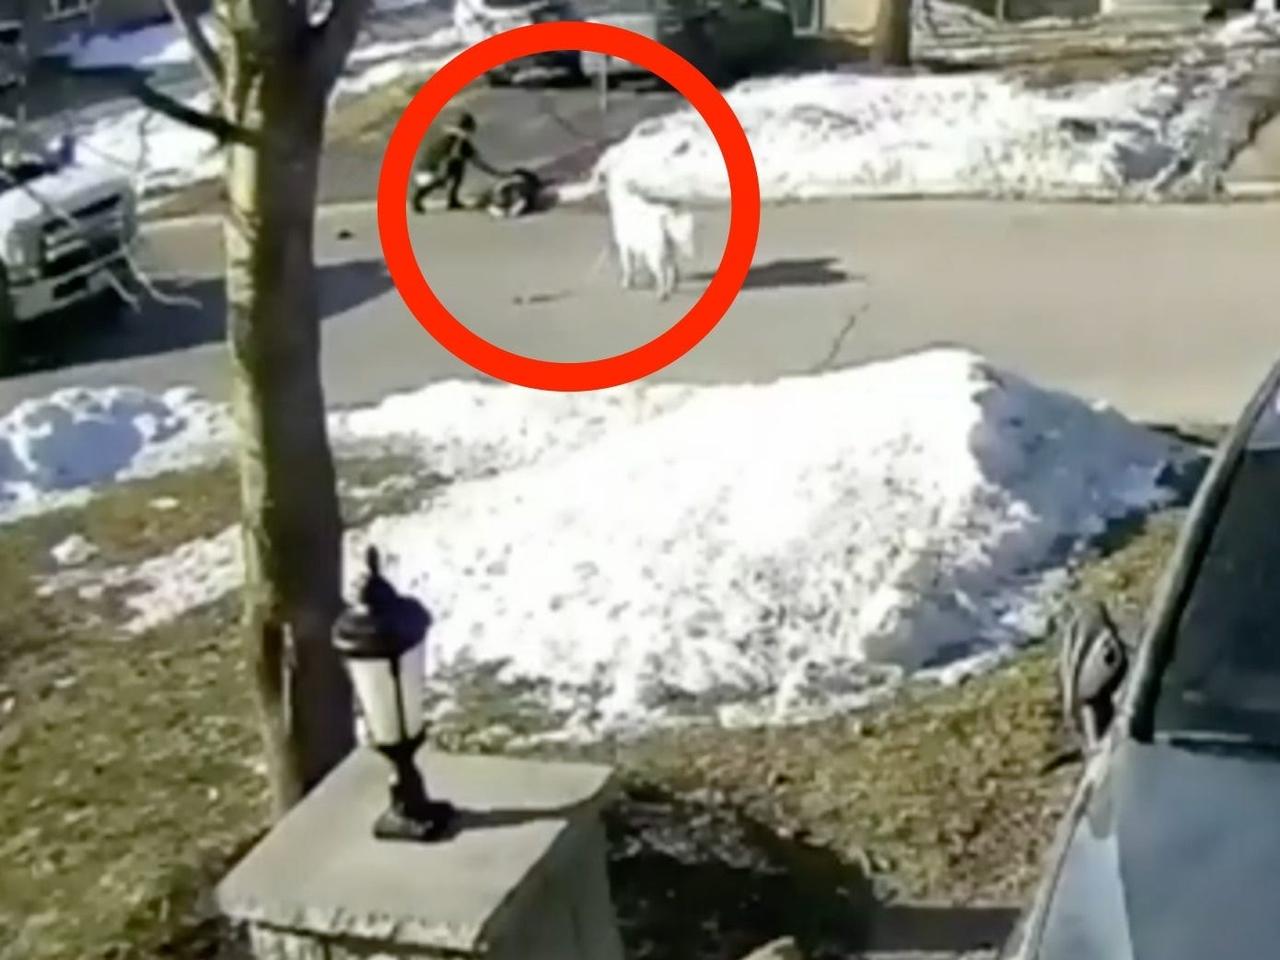 防犯カメラの映像には、犬のクローバーが通りかかったドライバーに助けを求めている様子が映し出されていた。